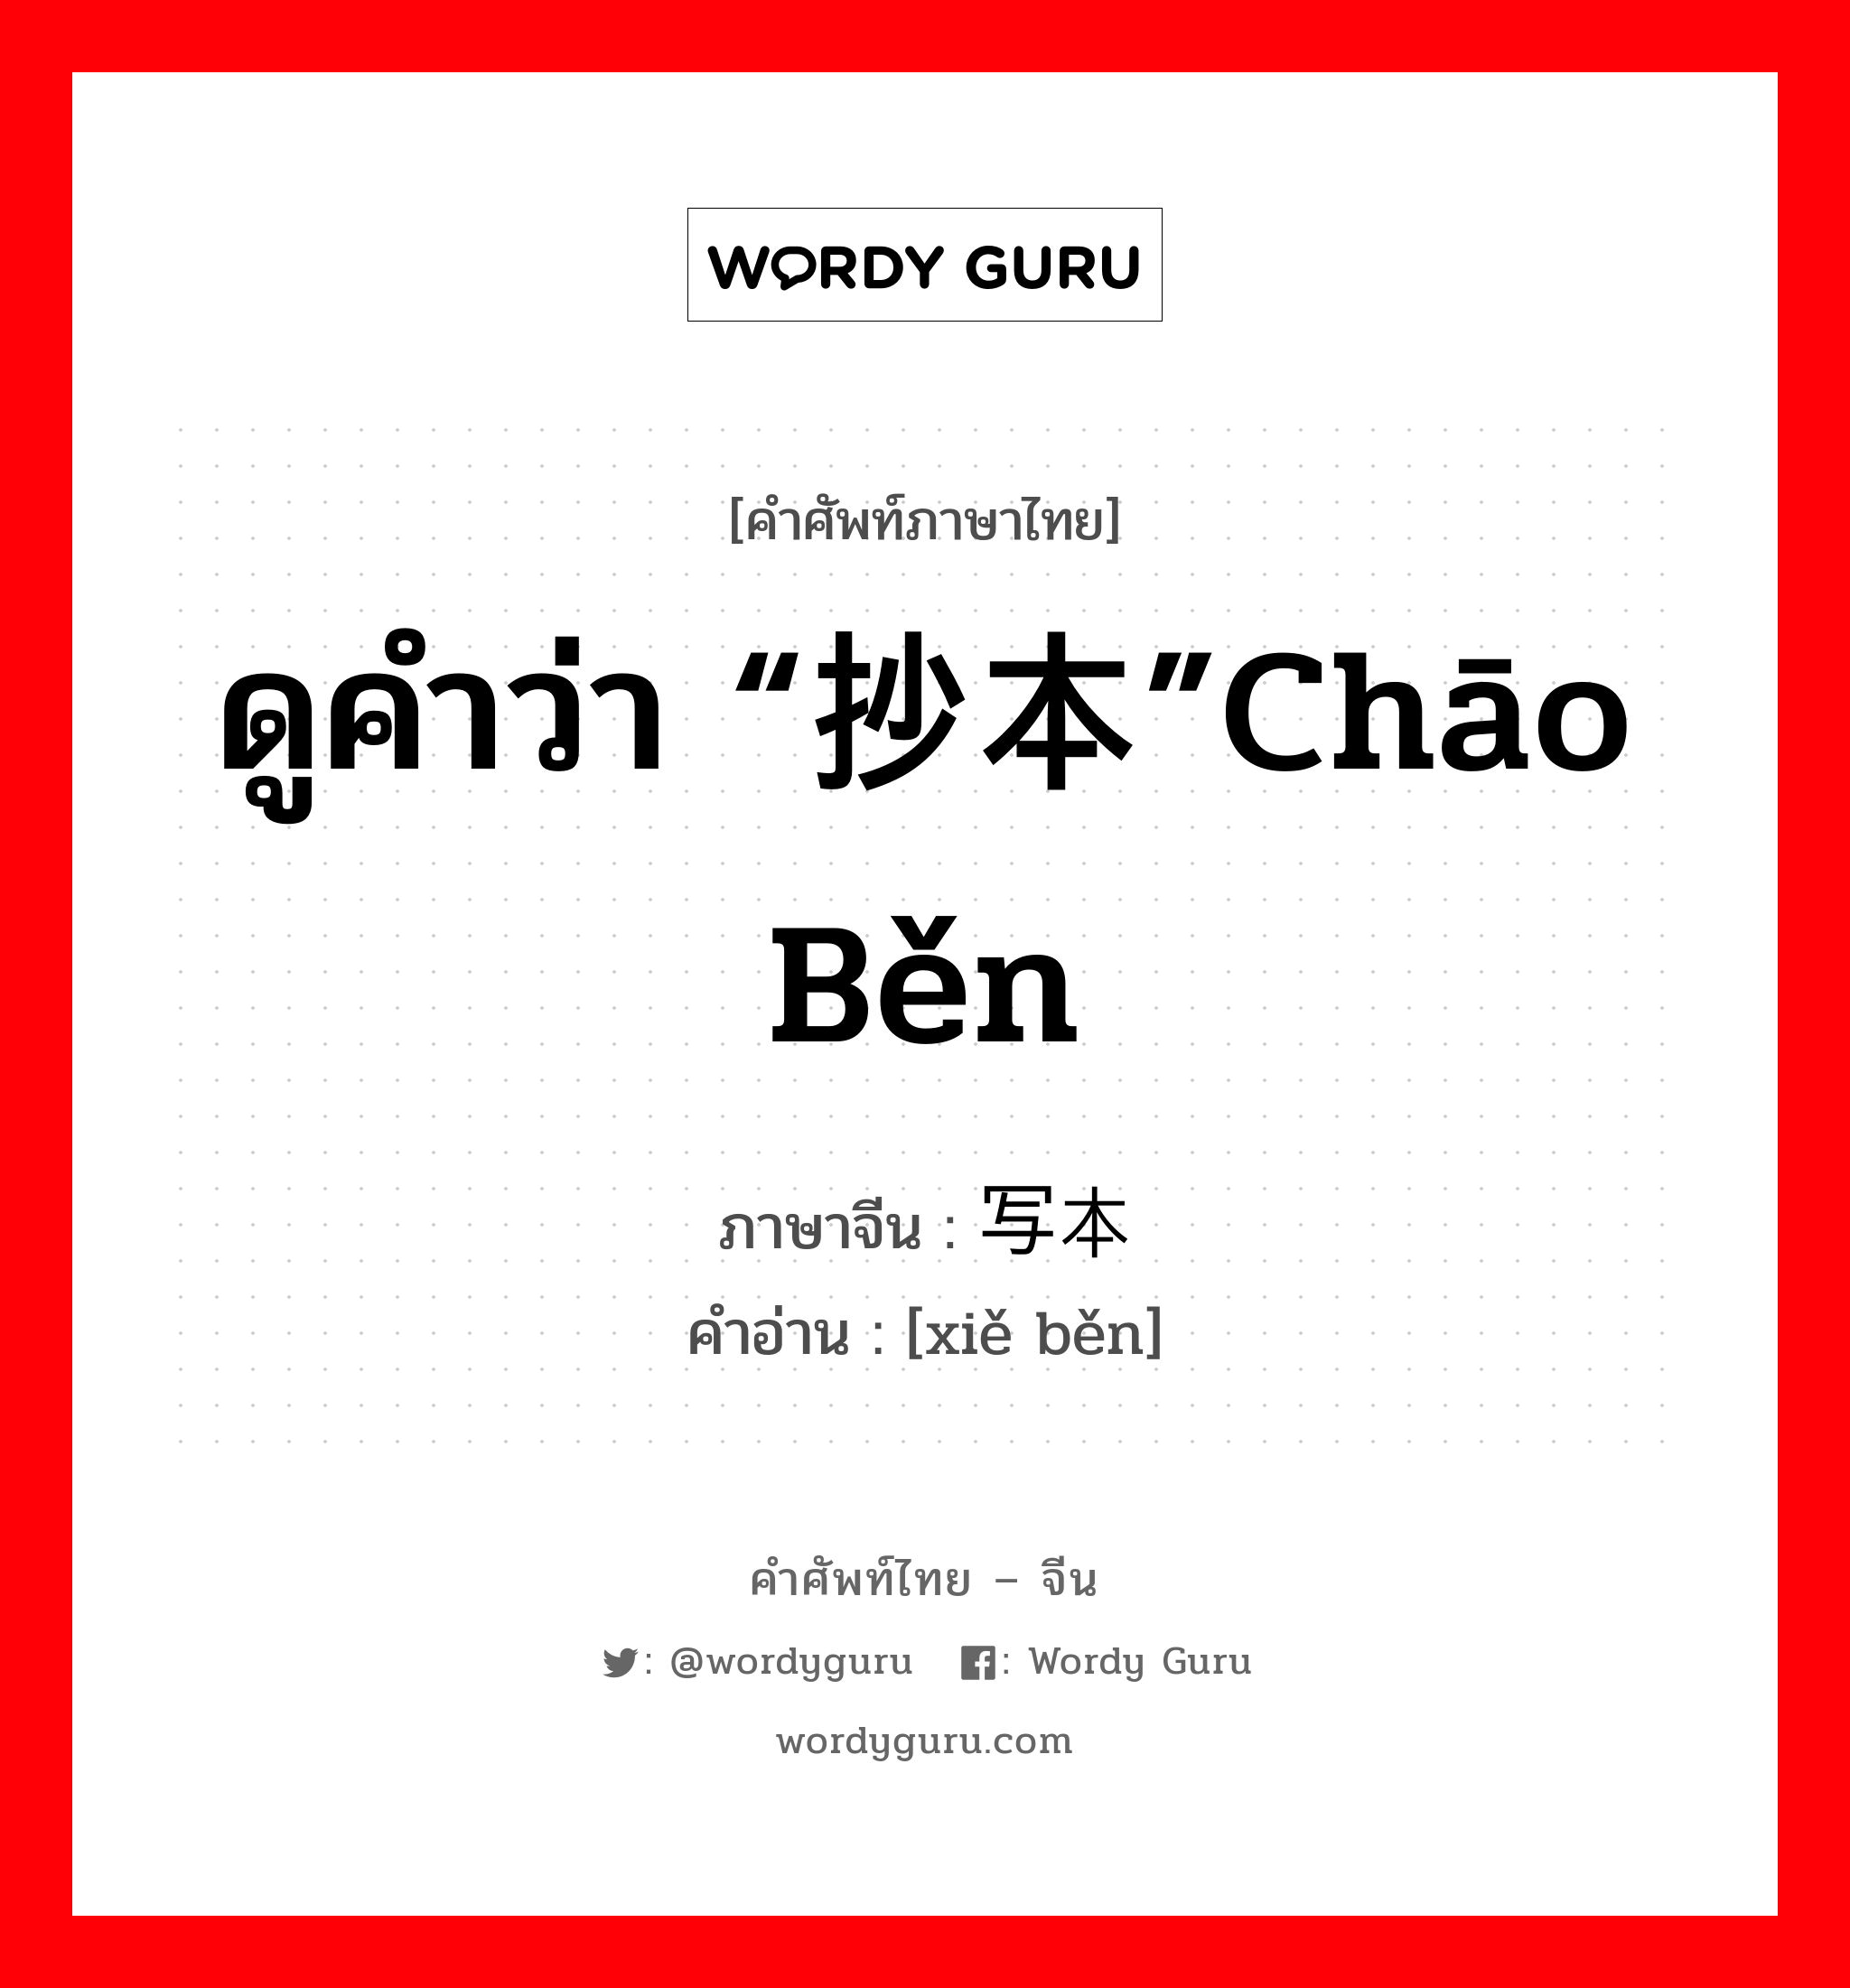 ดูคำว่า “抄本”chāo běn ภาษาจีนคืออะไร, คำศัพท์ภาษาไทย - จีน ดูคำว่า “抄本”chāo běn ภาษาจีน 写本 คำอ่าน [xiě běn]